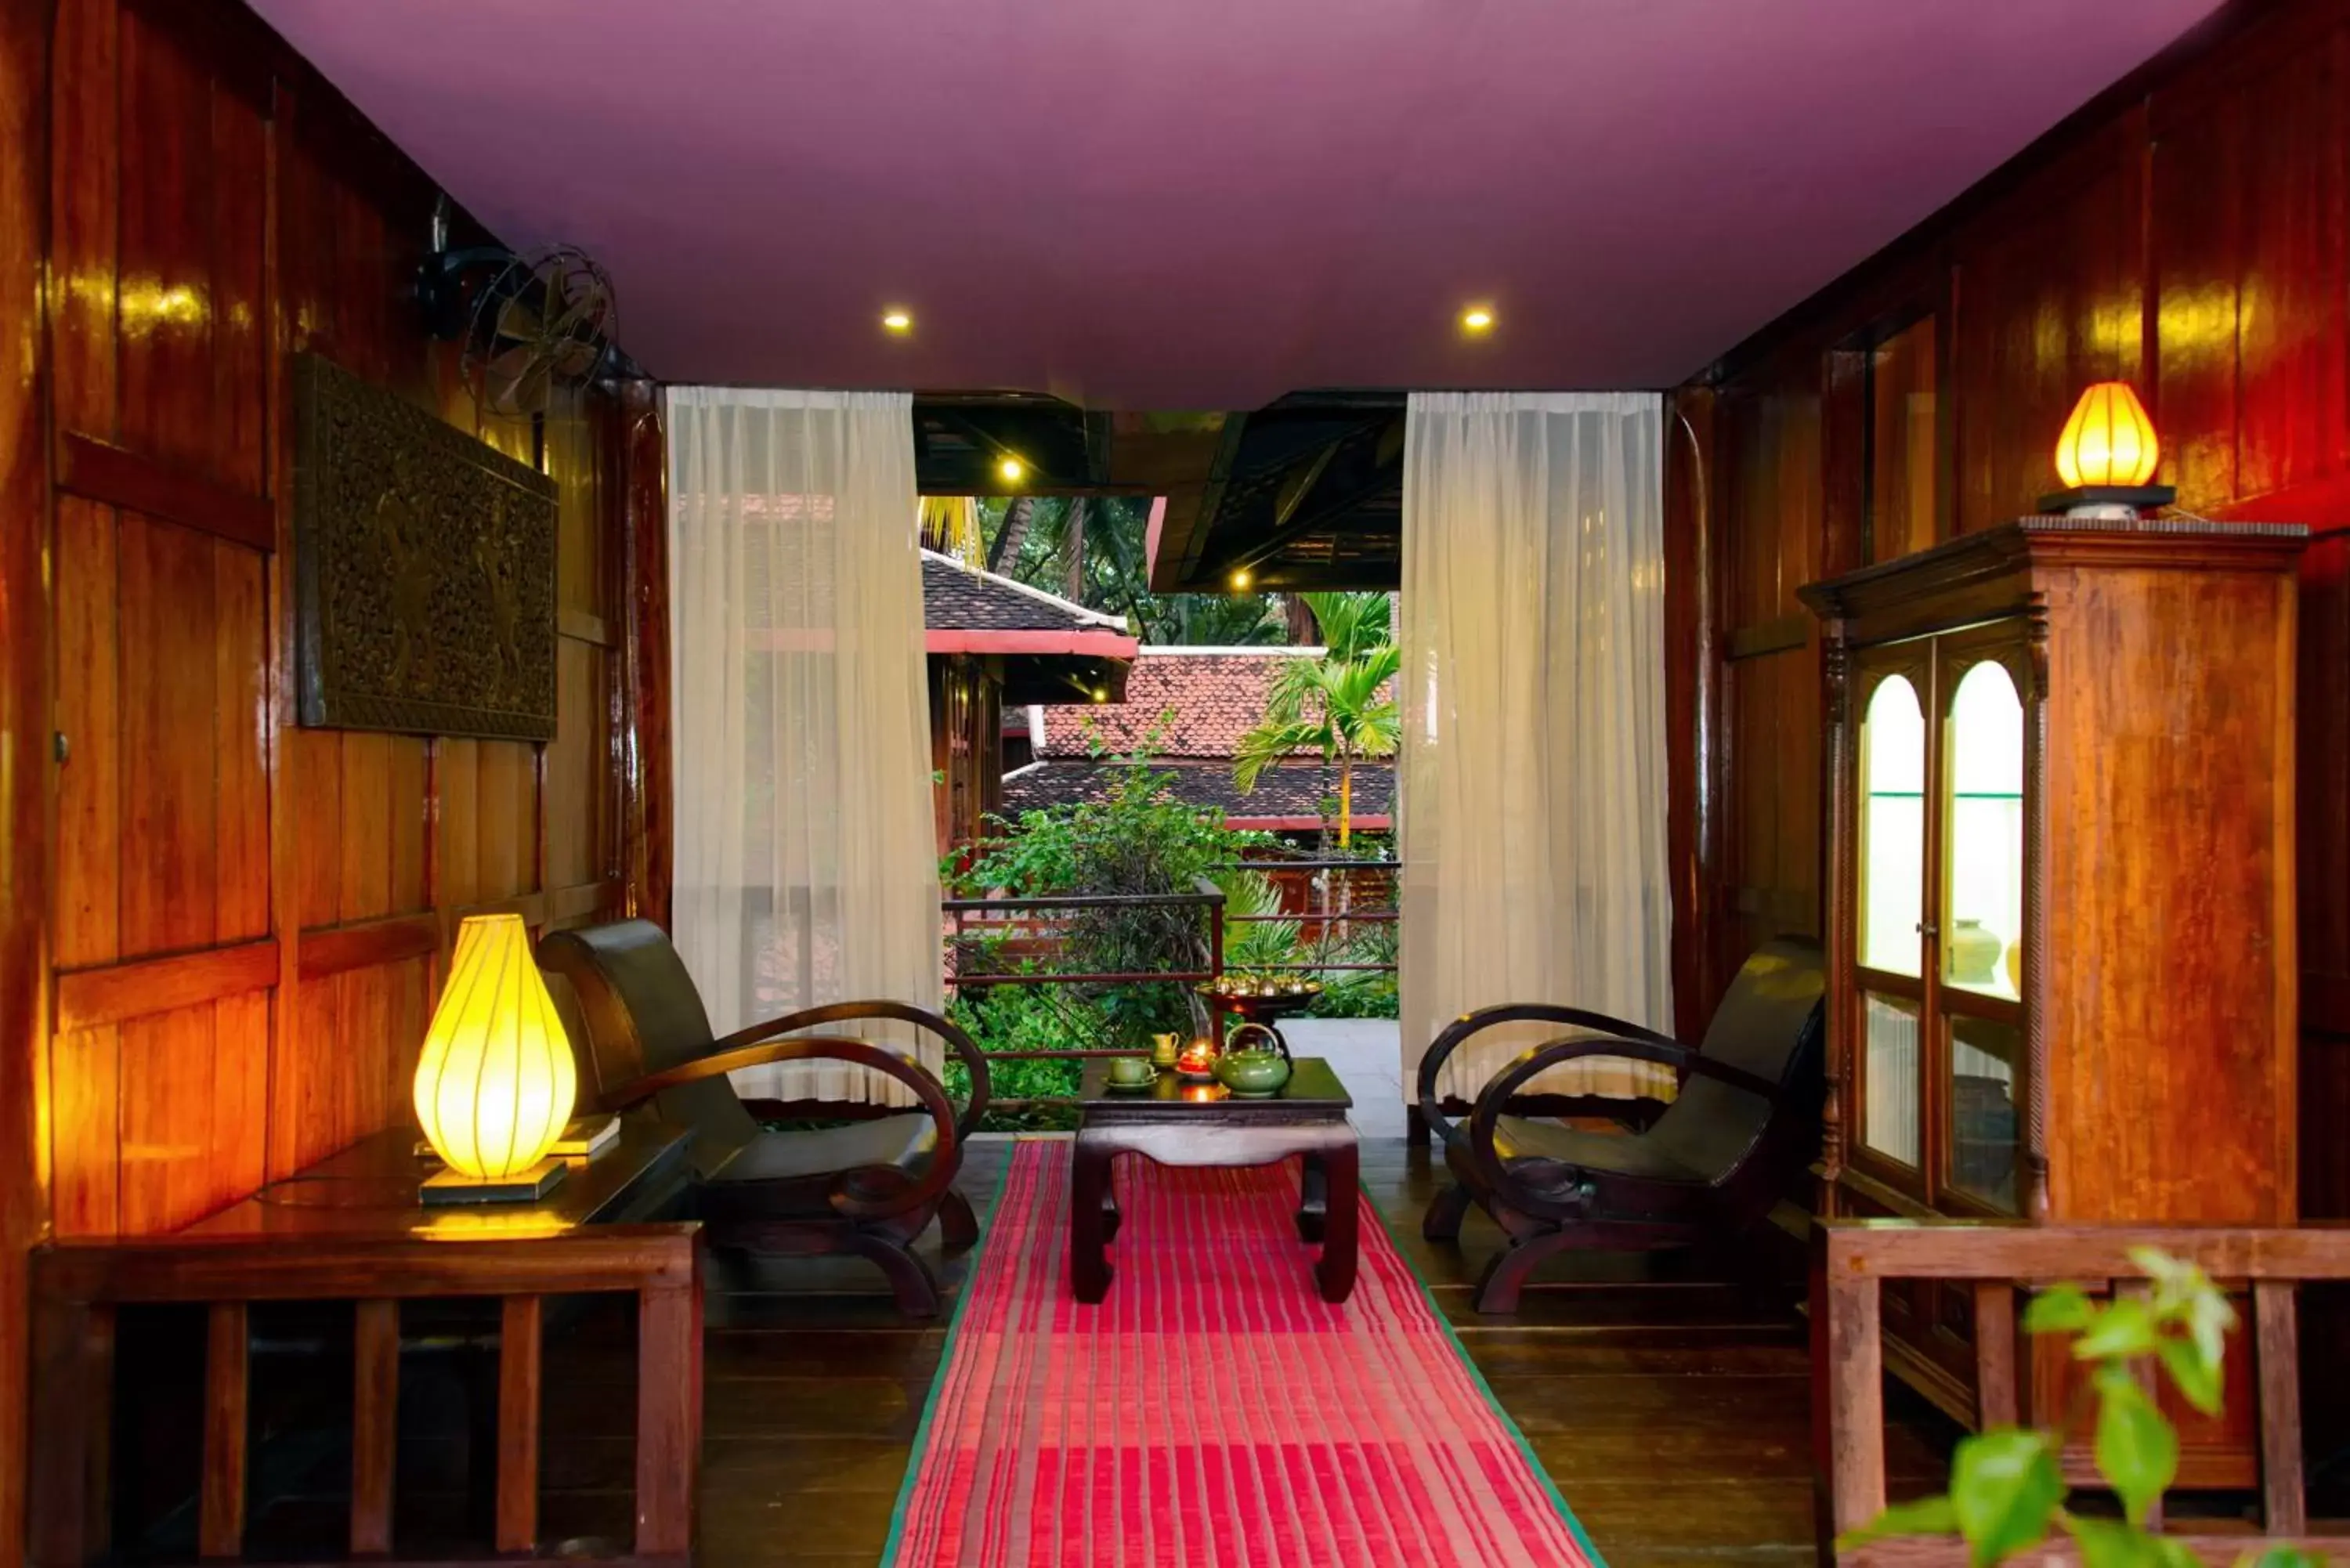 Living room in Angkor Village Hotel